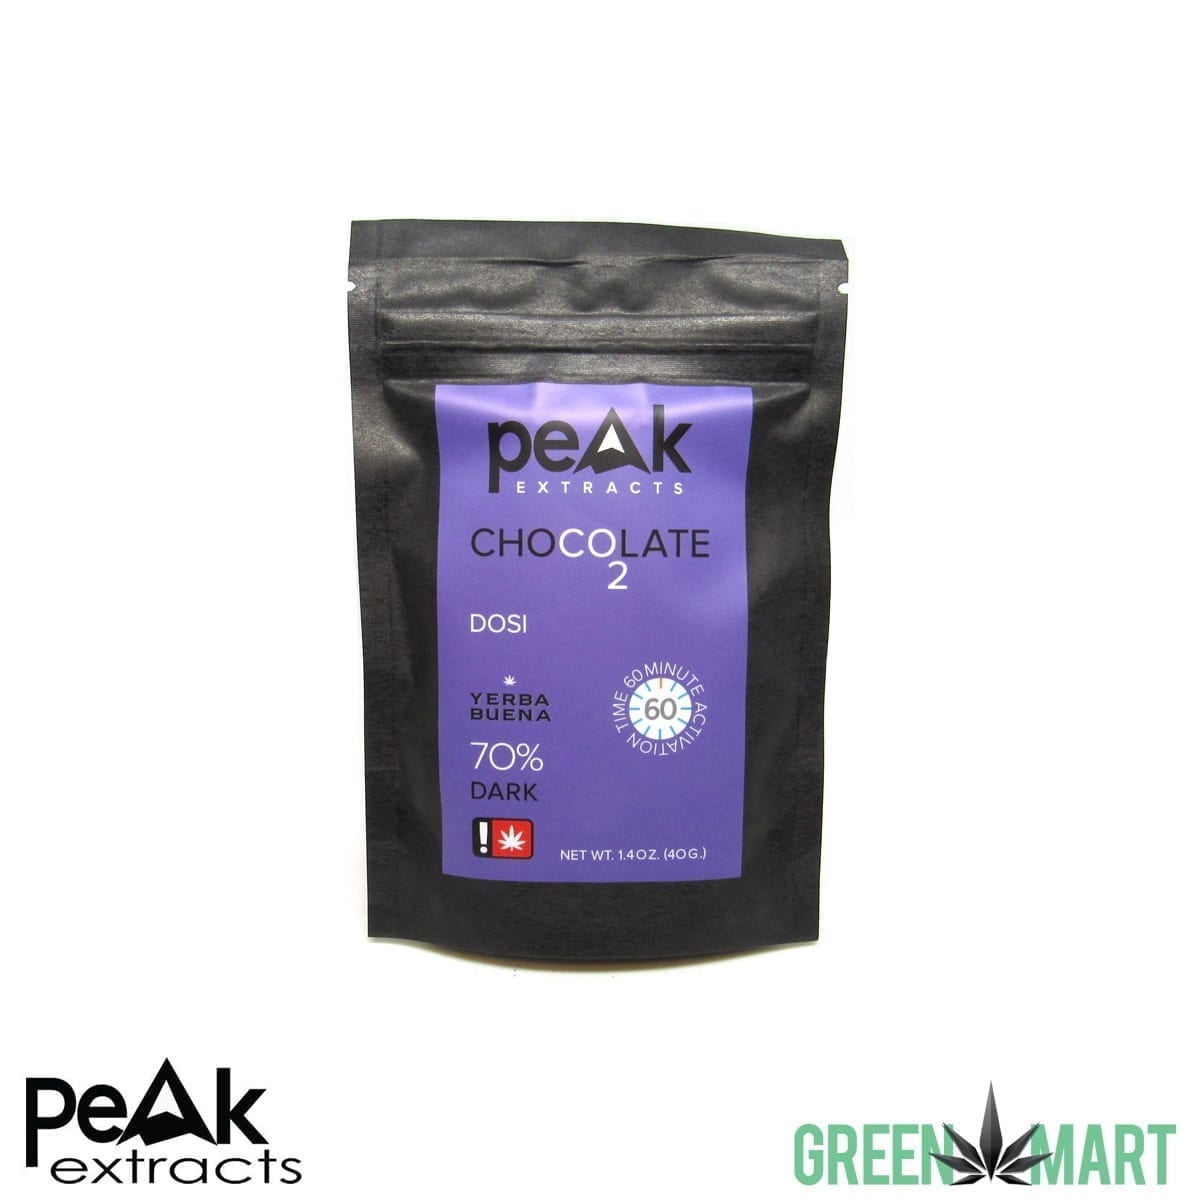 Peak Extracts Chocolates - Dosi